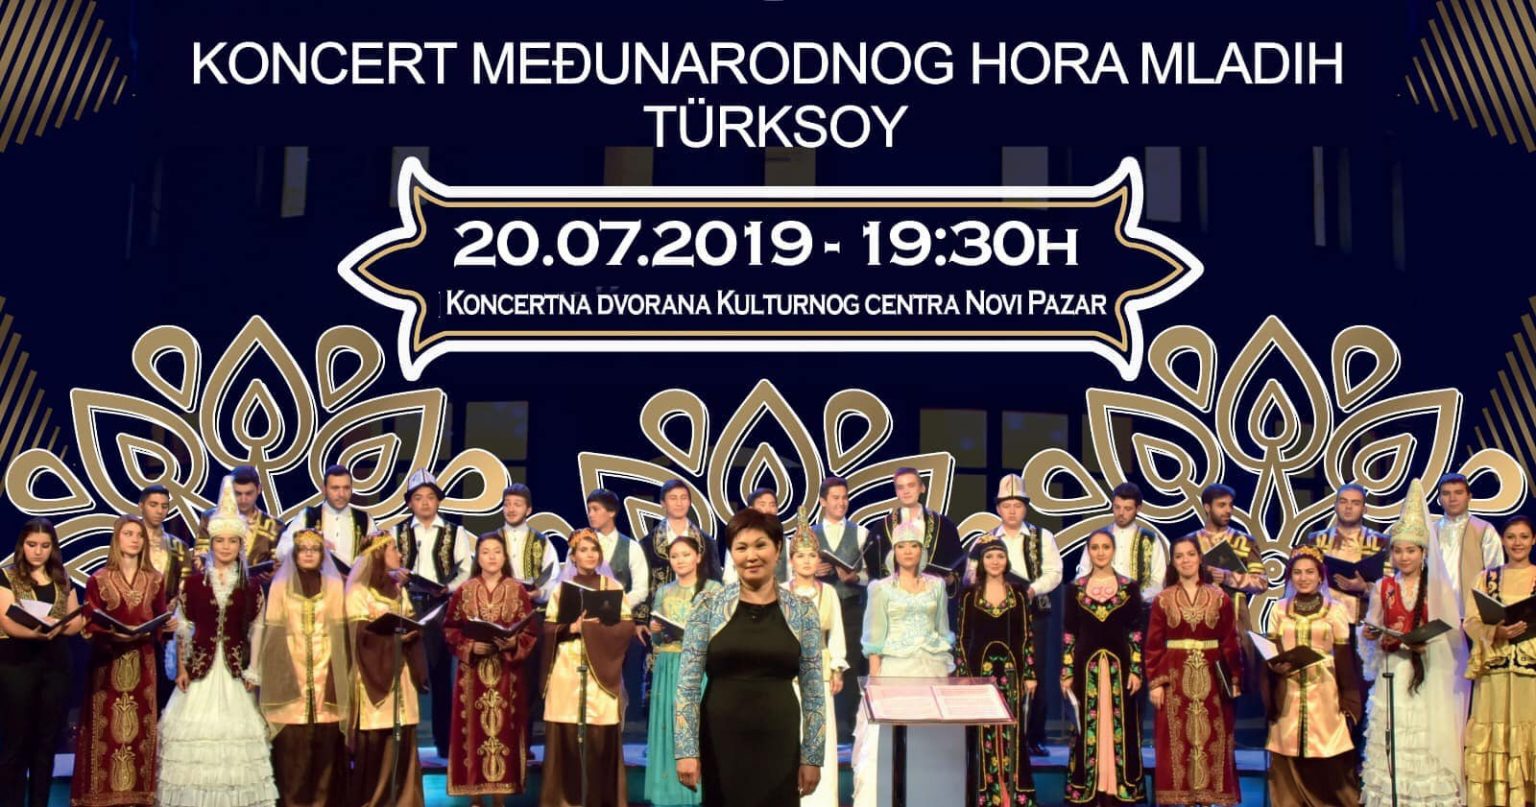 Koncert međunarodnog hora mladih TÜRKSOY